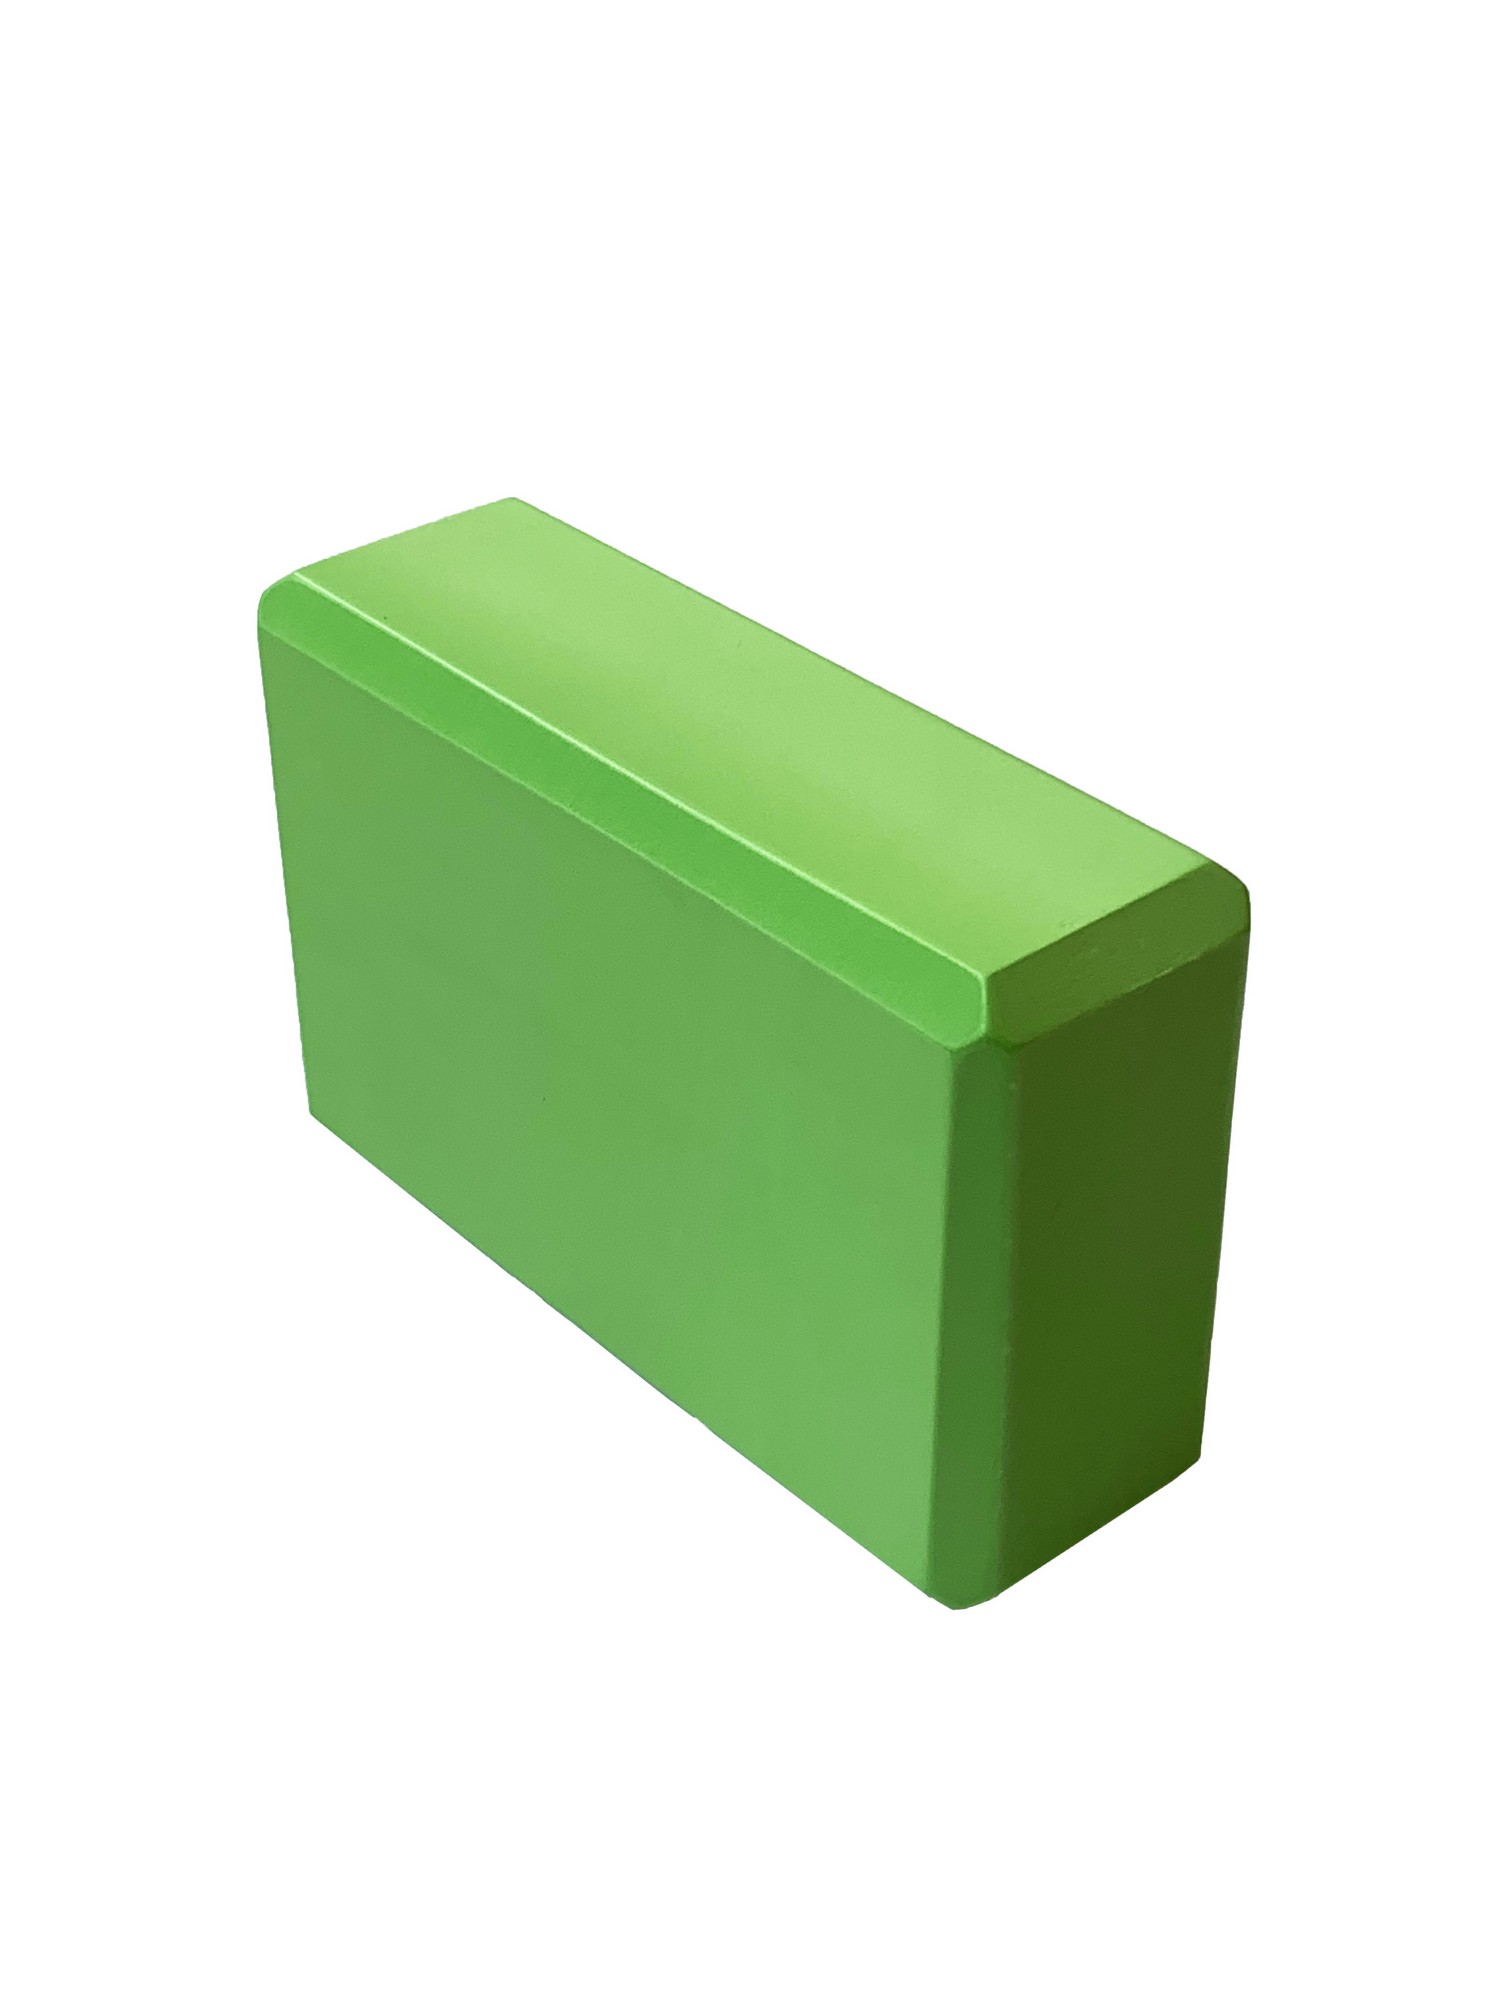 Йога блок Sportex полумягкий, из вспененного ЭВА 22,3х15х7,6 см E39131-41 зеленый - фото 1